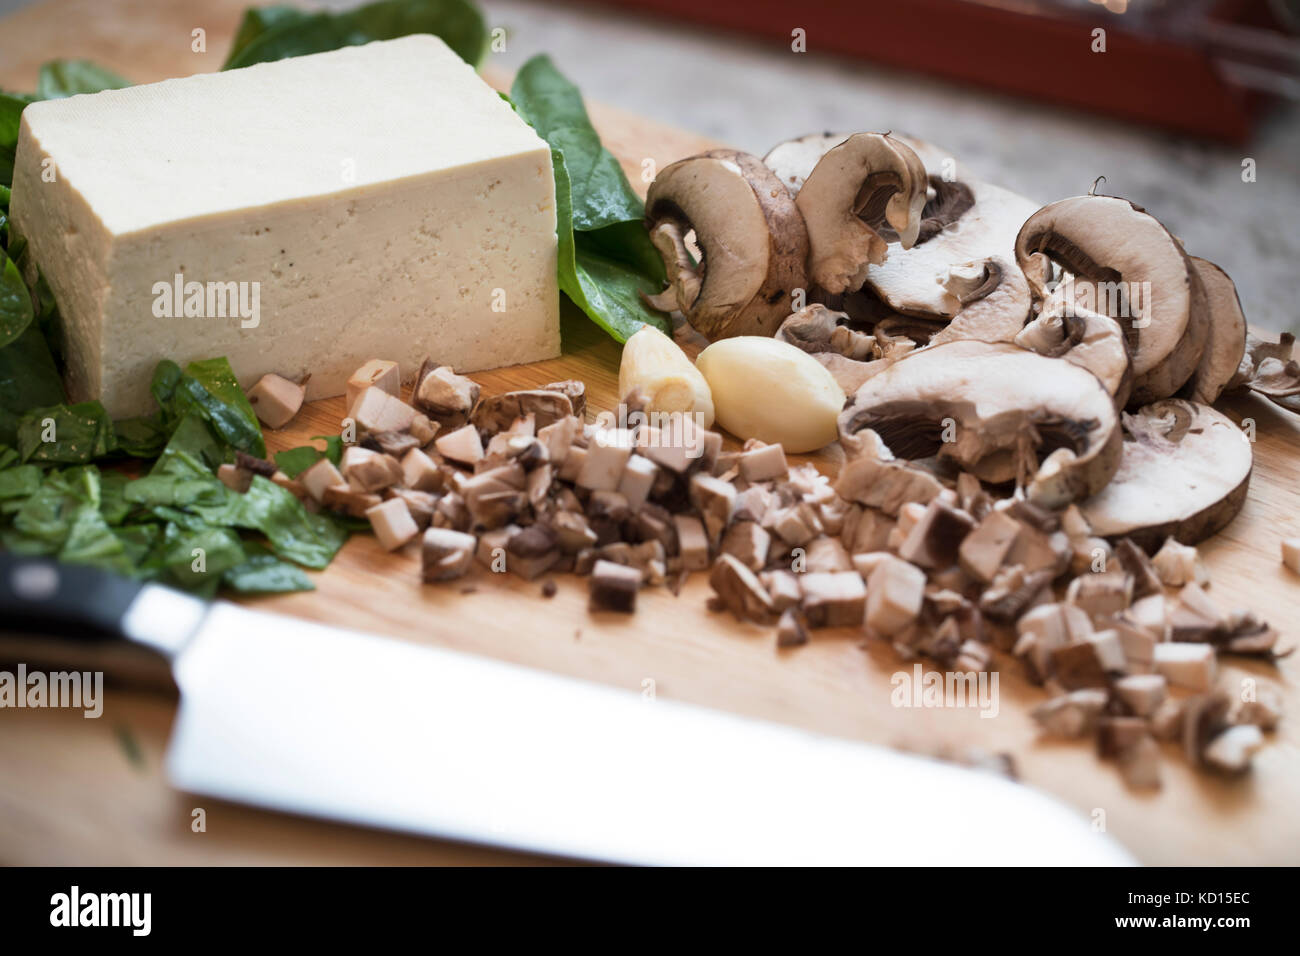 Gehackte und geschnittene Pilze, Spinat und Tofu auf einem Schneidebrett mit einem Messer. Stockfoto